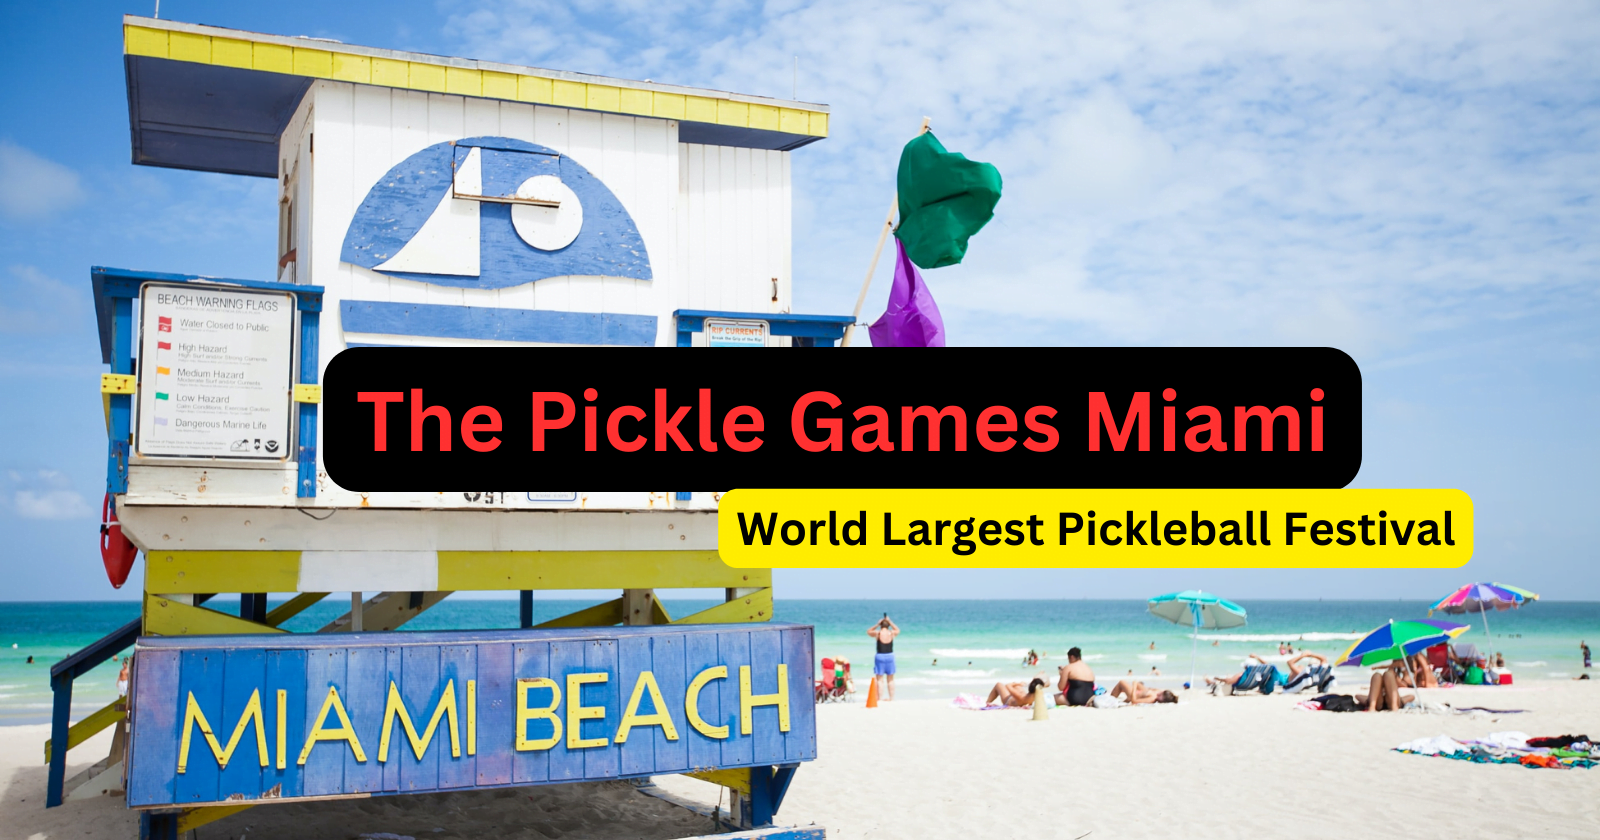 The Pickle Games Miami